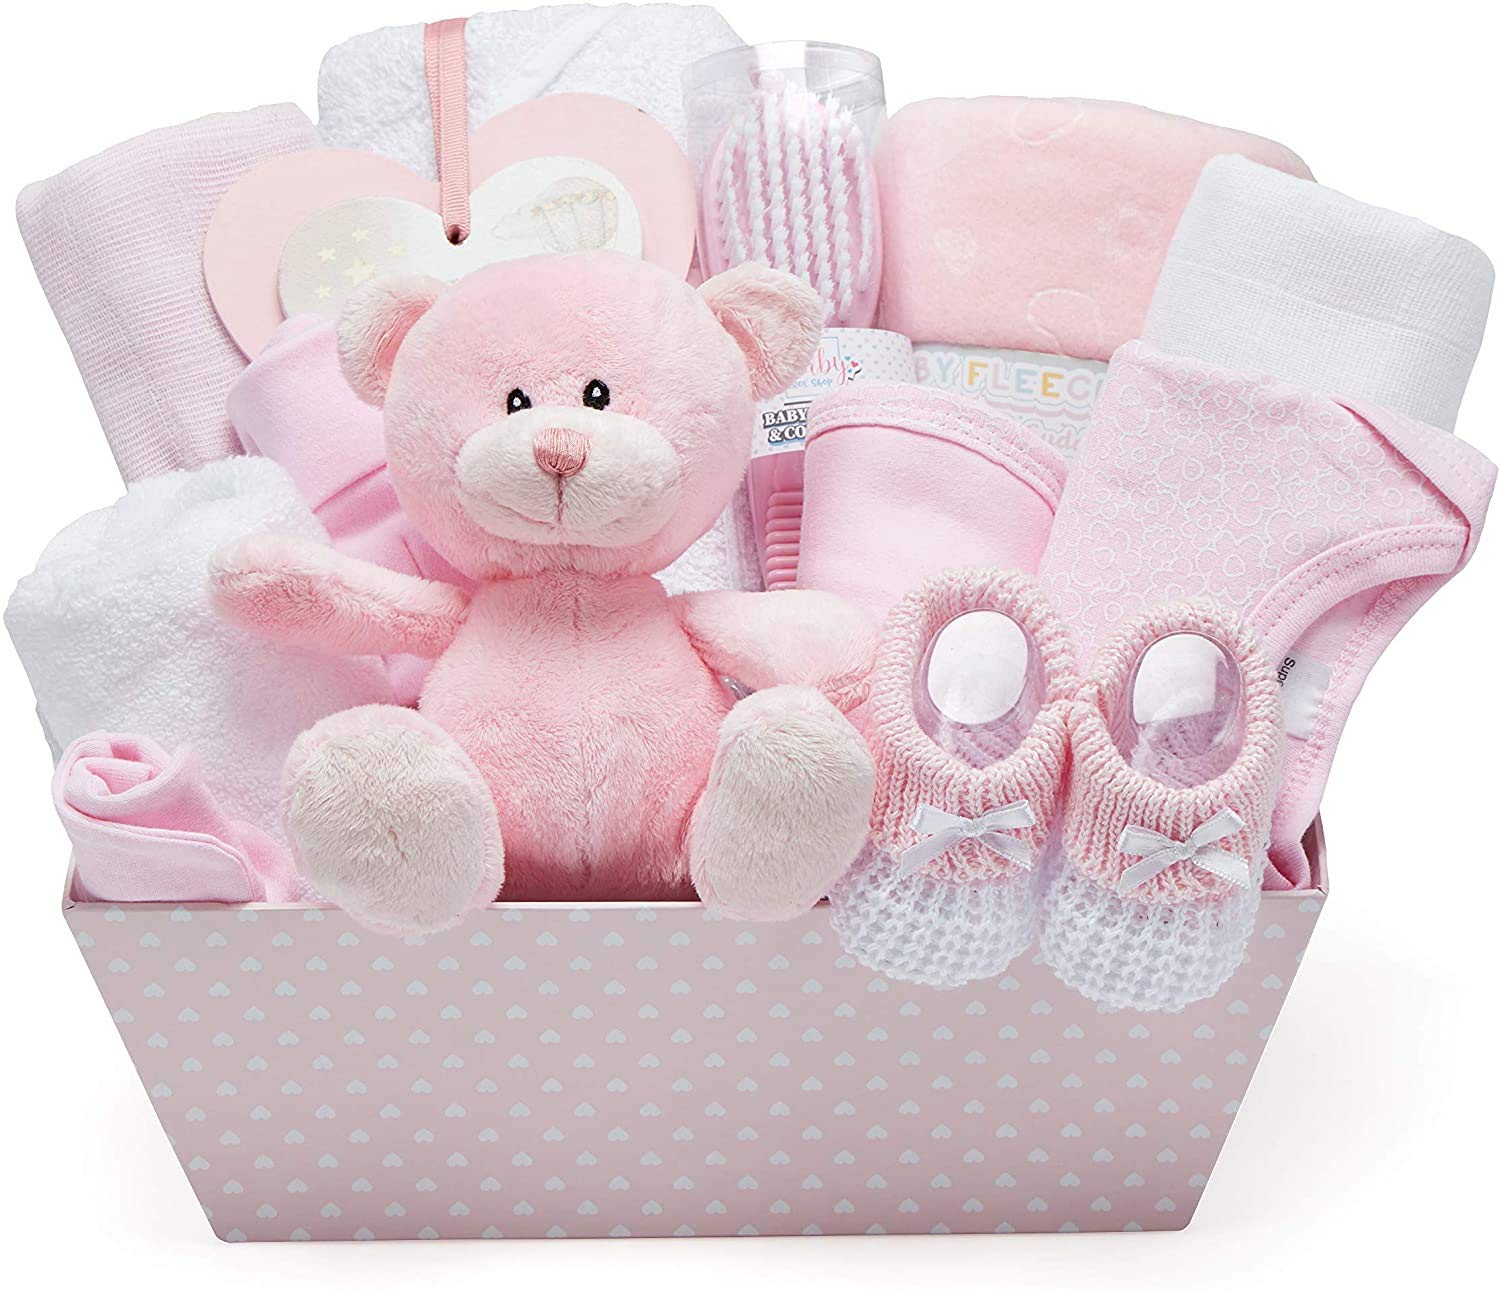 Custom Newborn Baby Shower Gift, Personalized Baby Girl Name Bib, Woodland  Crochet Rattle Teether, Baby Girl Bow Gift, Baby Gift Box